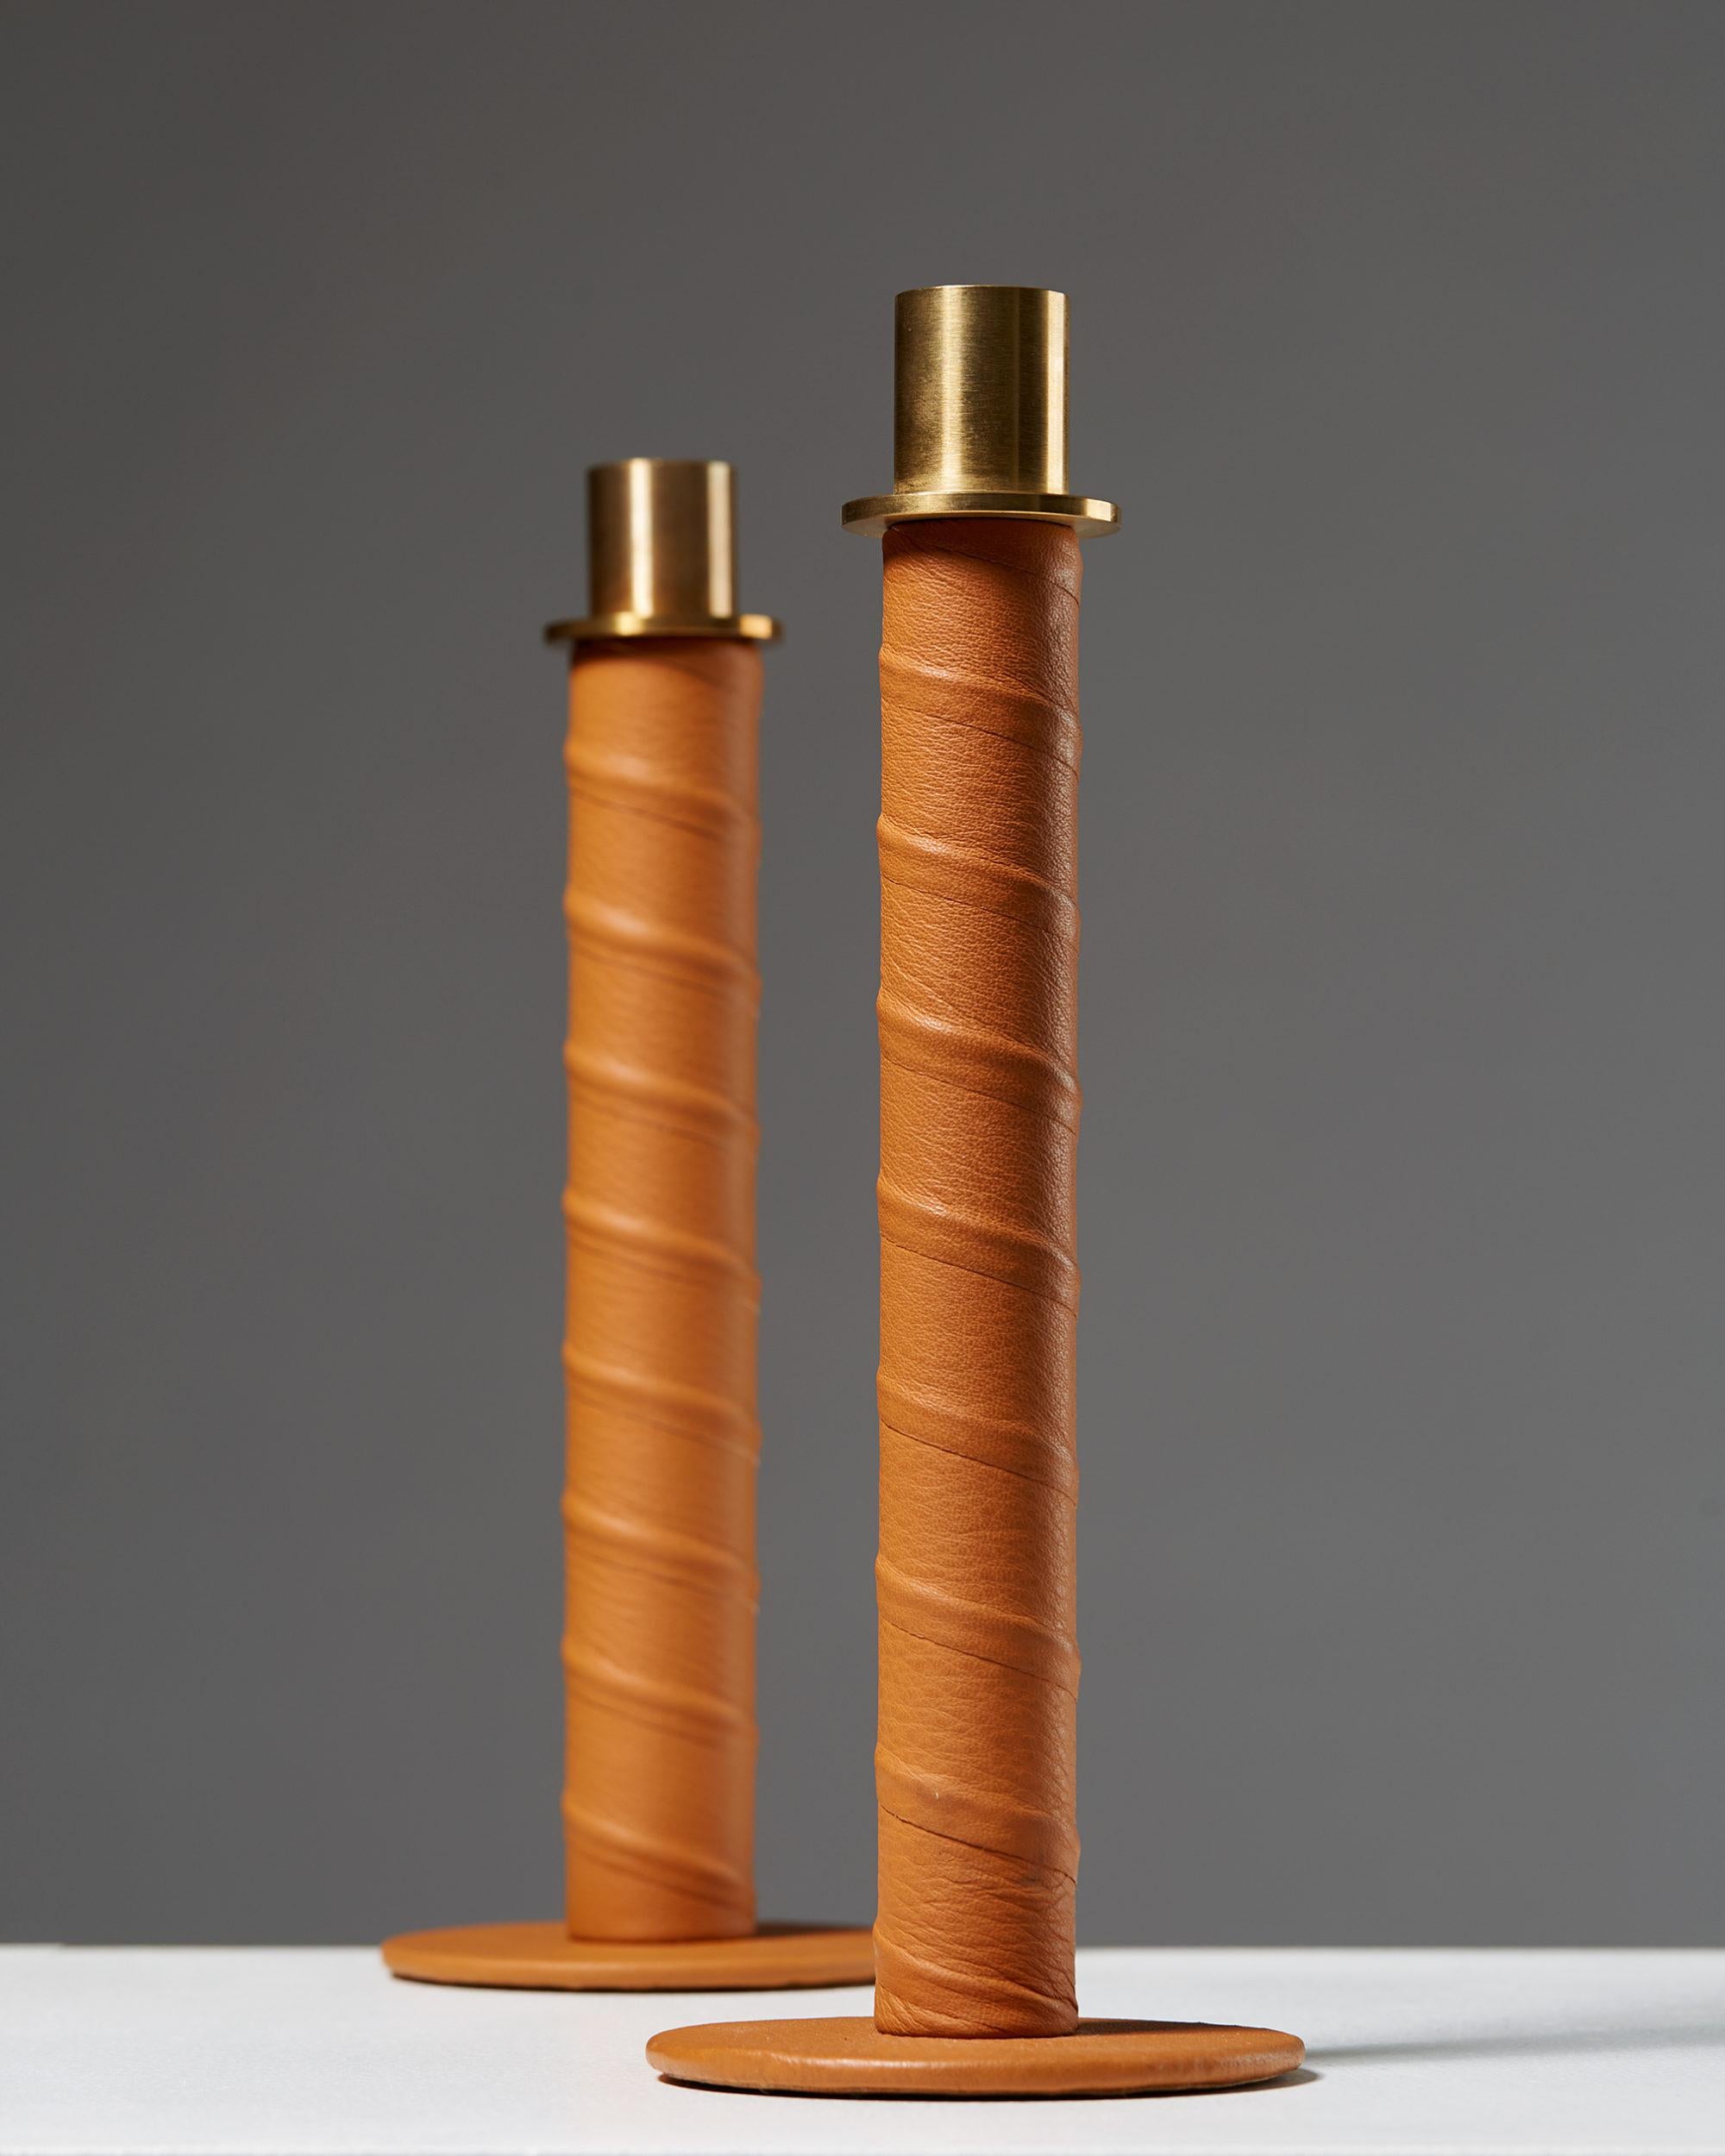 Swedish Set of Candlesticks “Herrgård” Designed by Alexander Lervik, Sweden, 2013